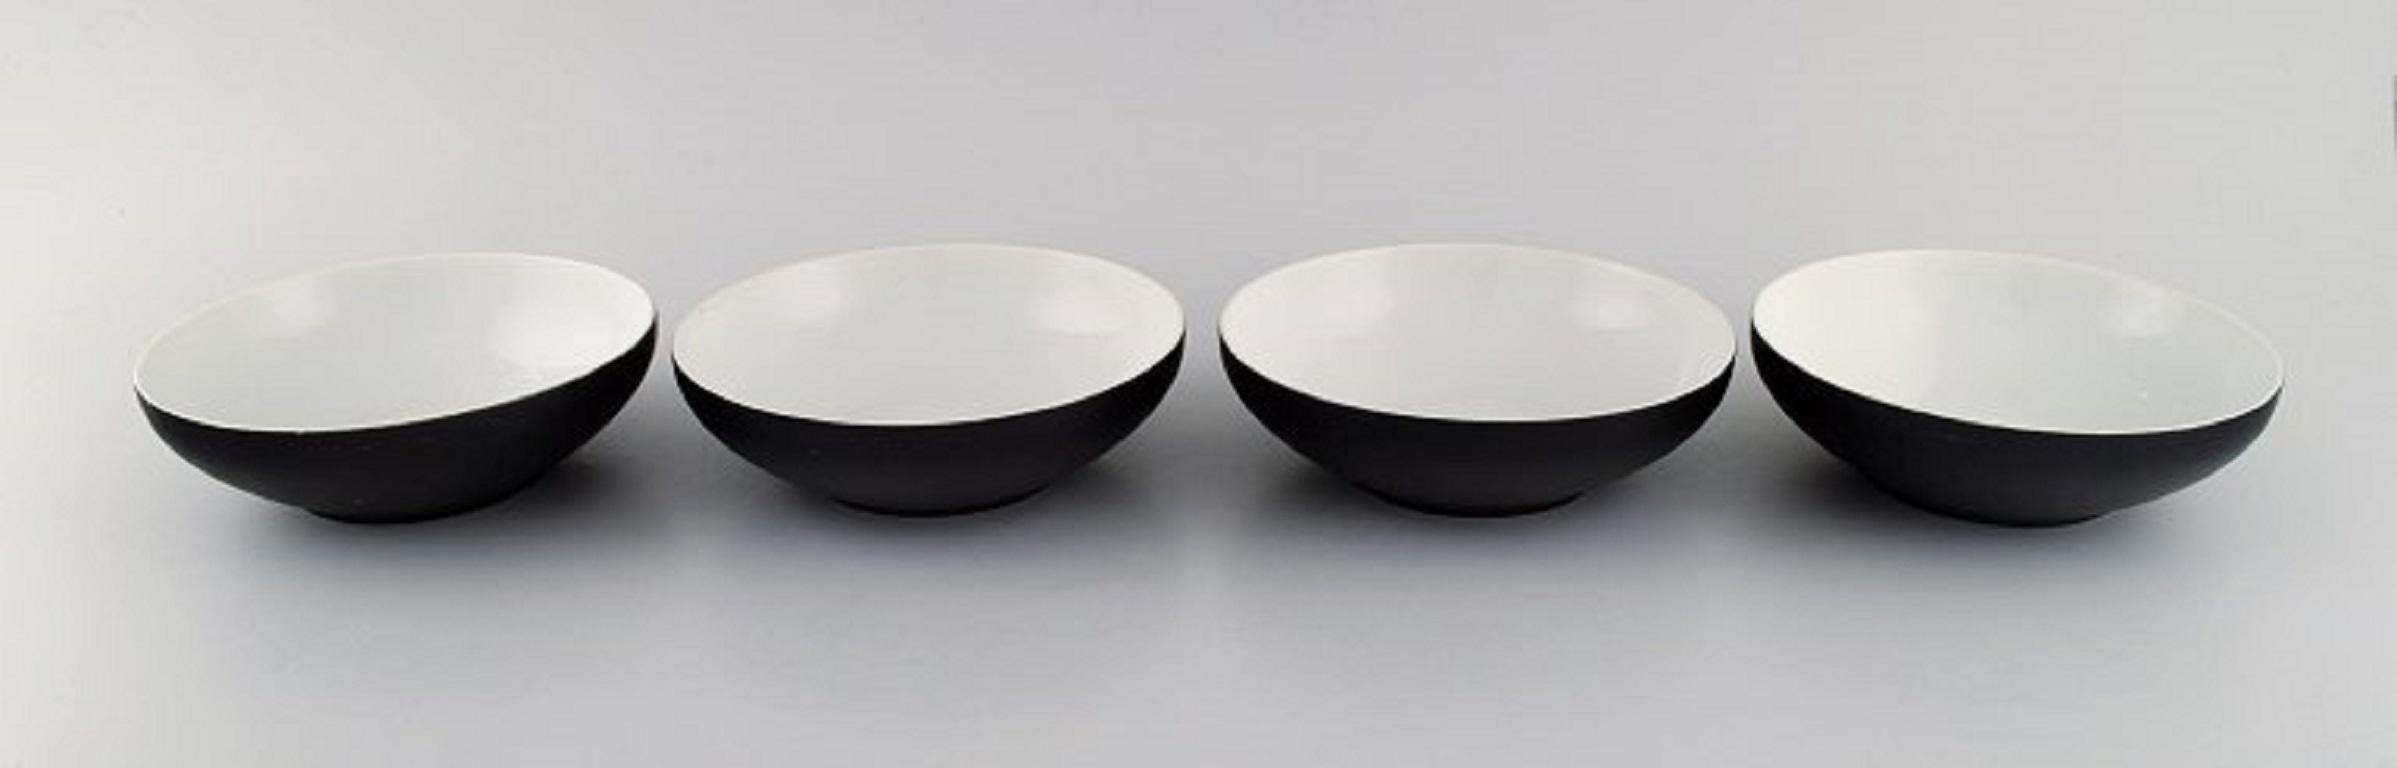 Kenji Fujita pour Tackett Associates. Quatre bols en porcelaine. Daté de 1953 à 1956.
Mesures : 15,5 x 5 cm.
En parfait état.
Estampillé.